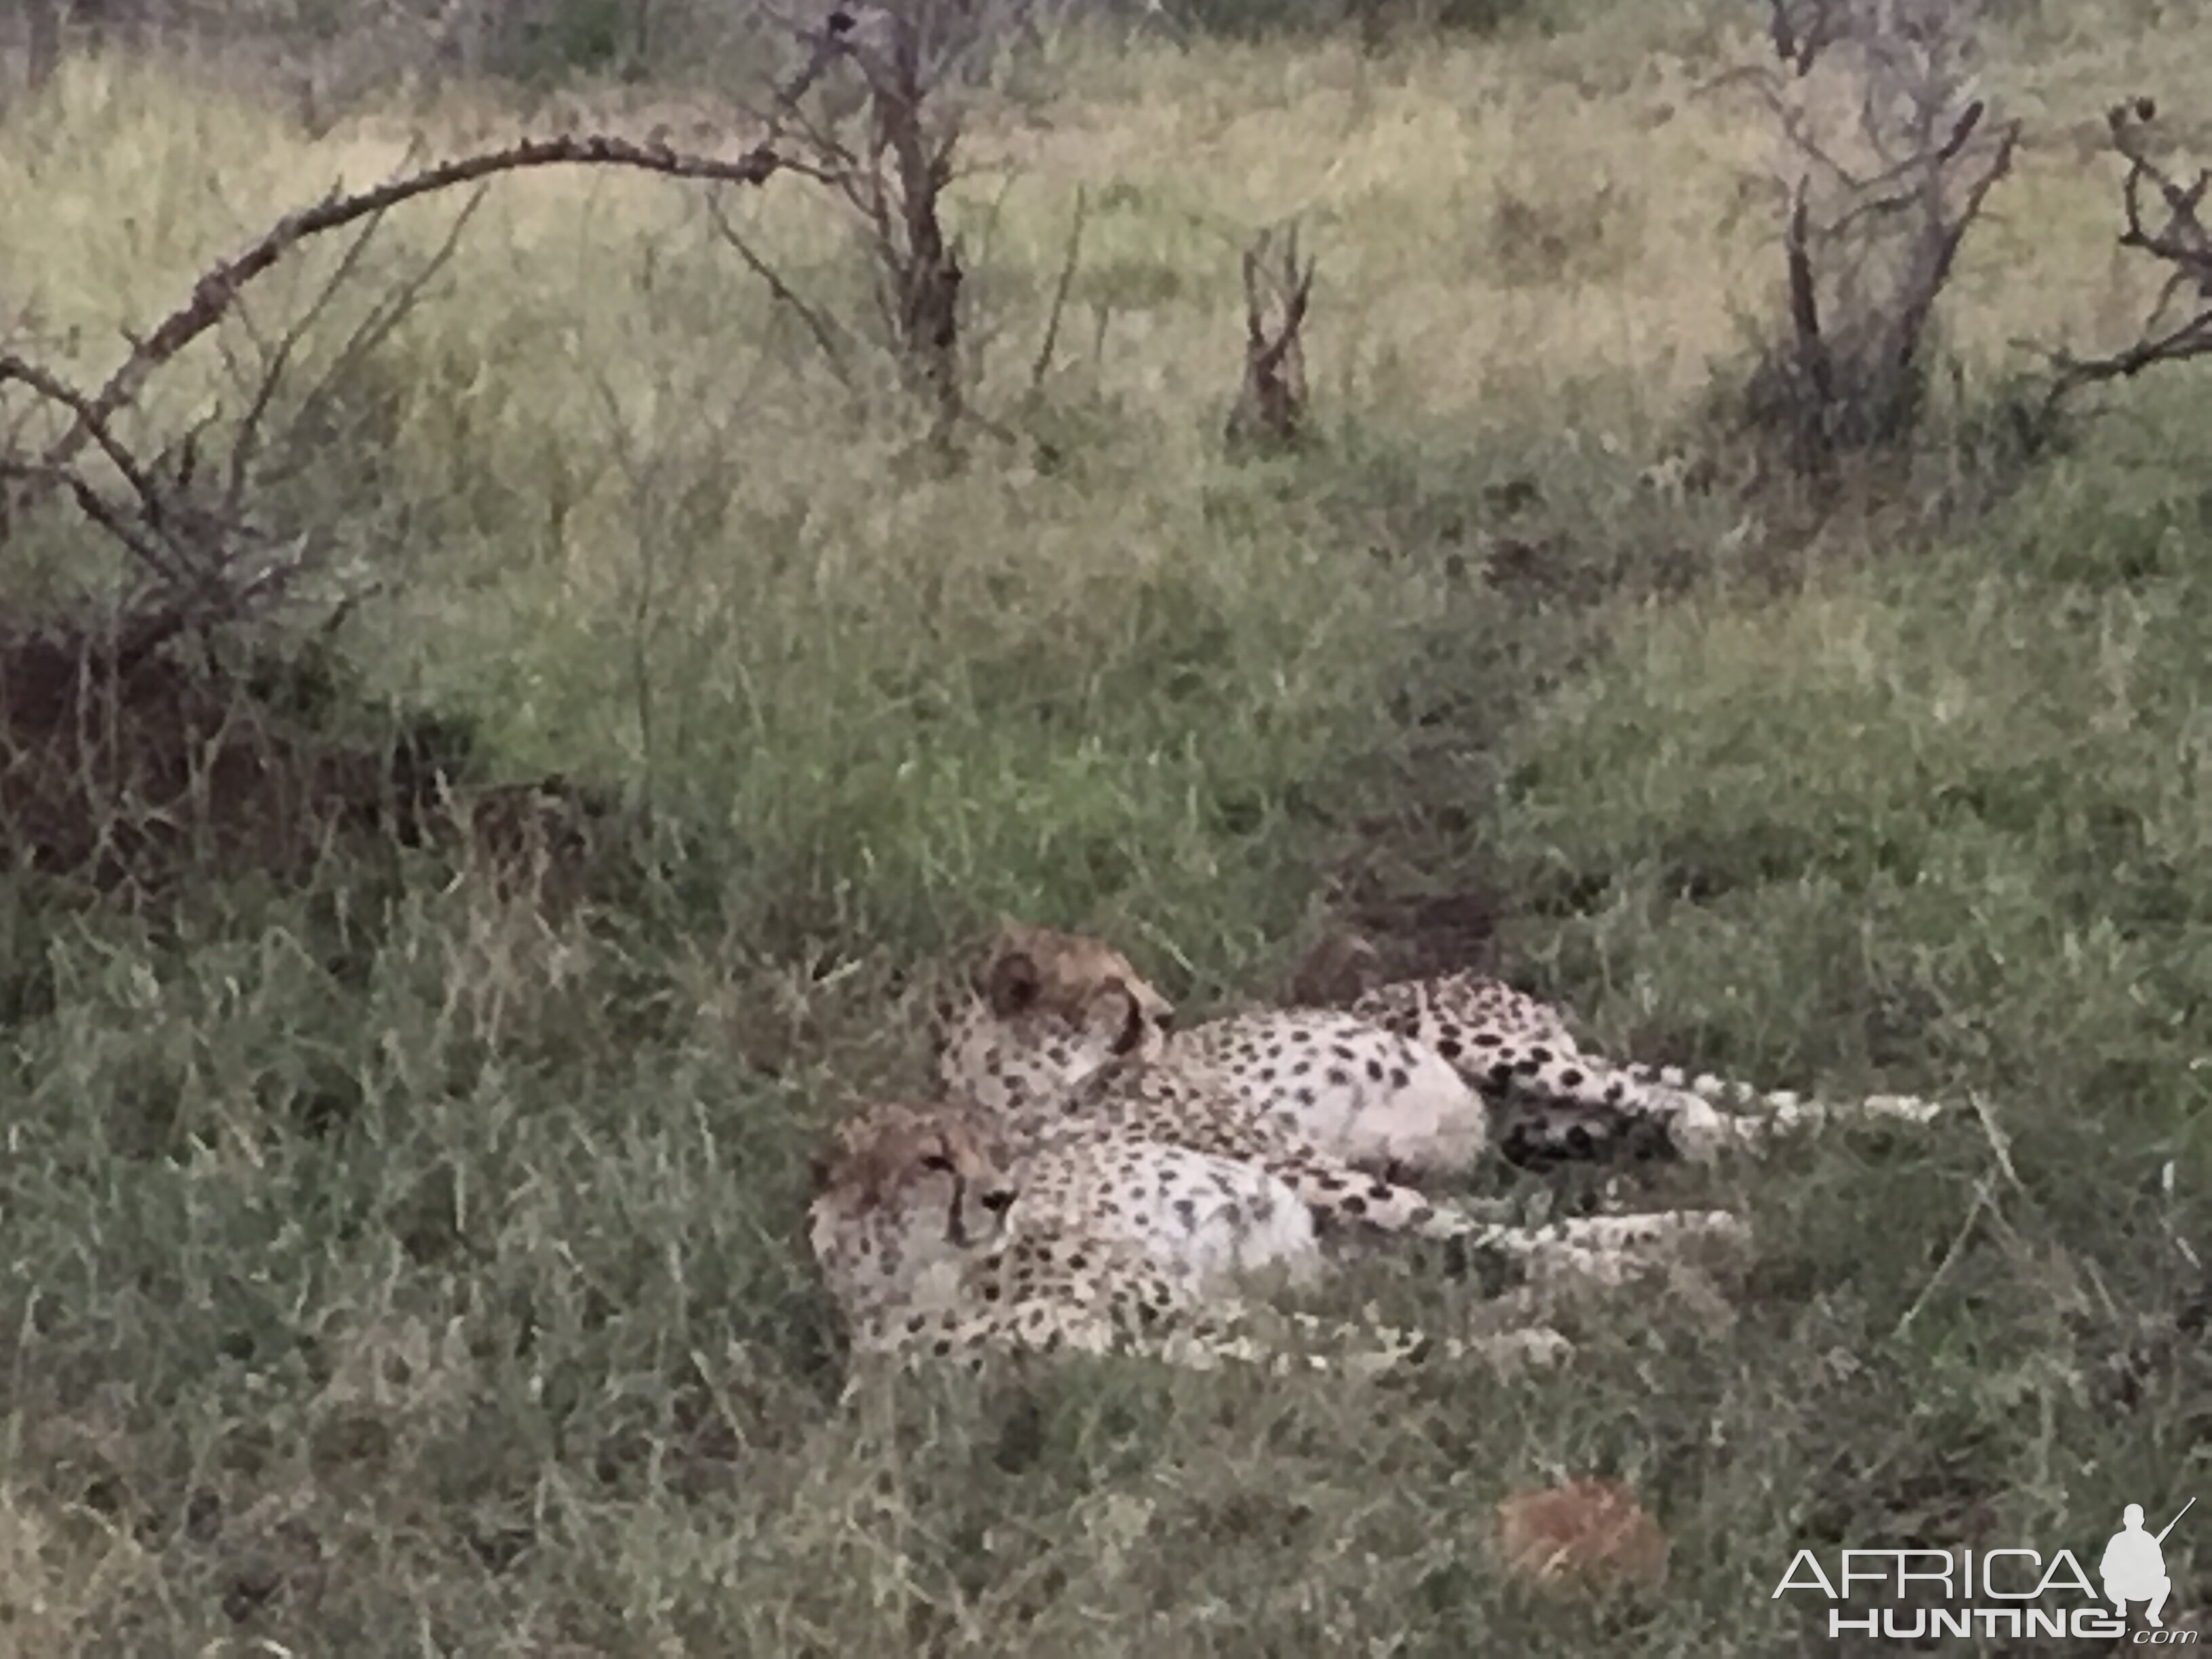 Cheetahs taking a nap